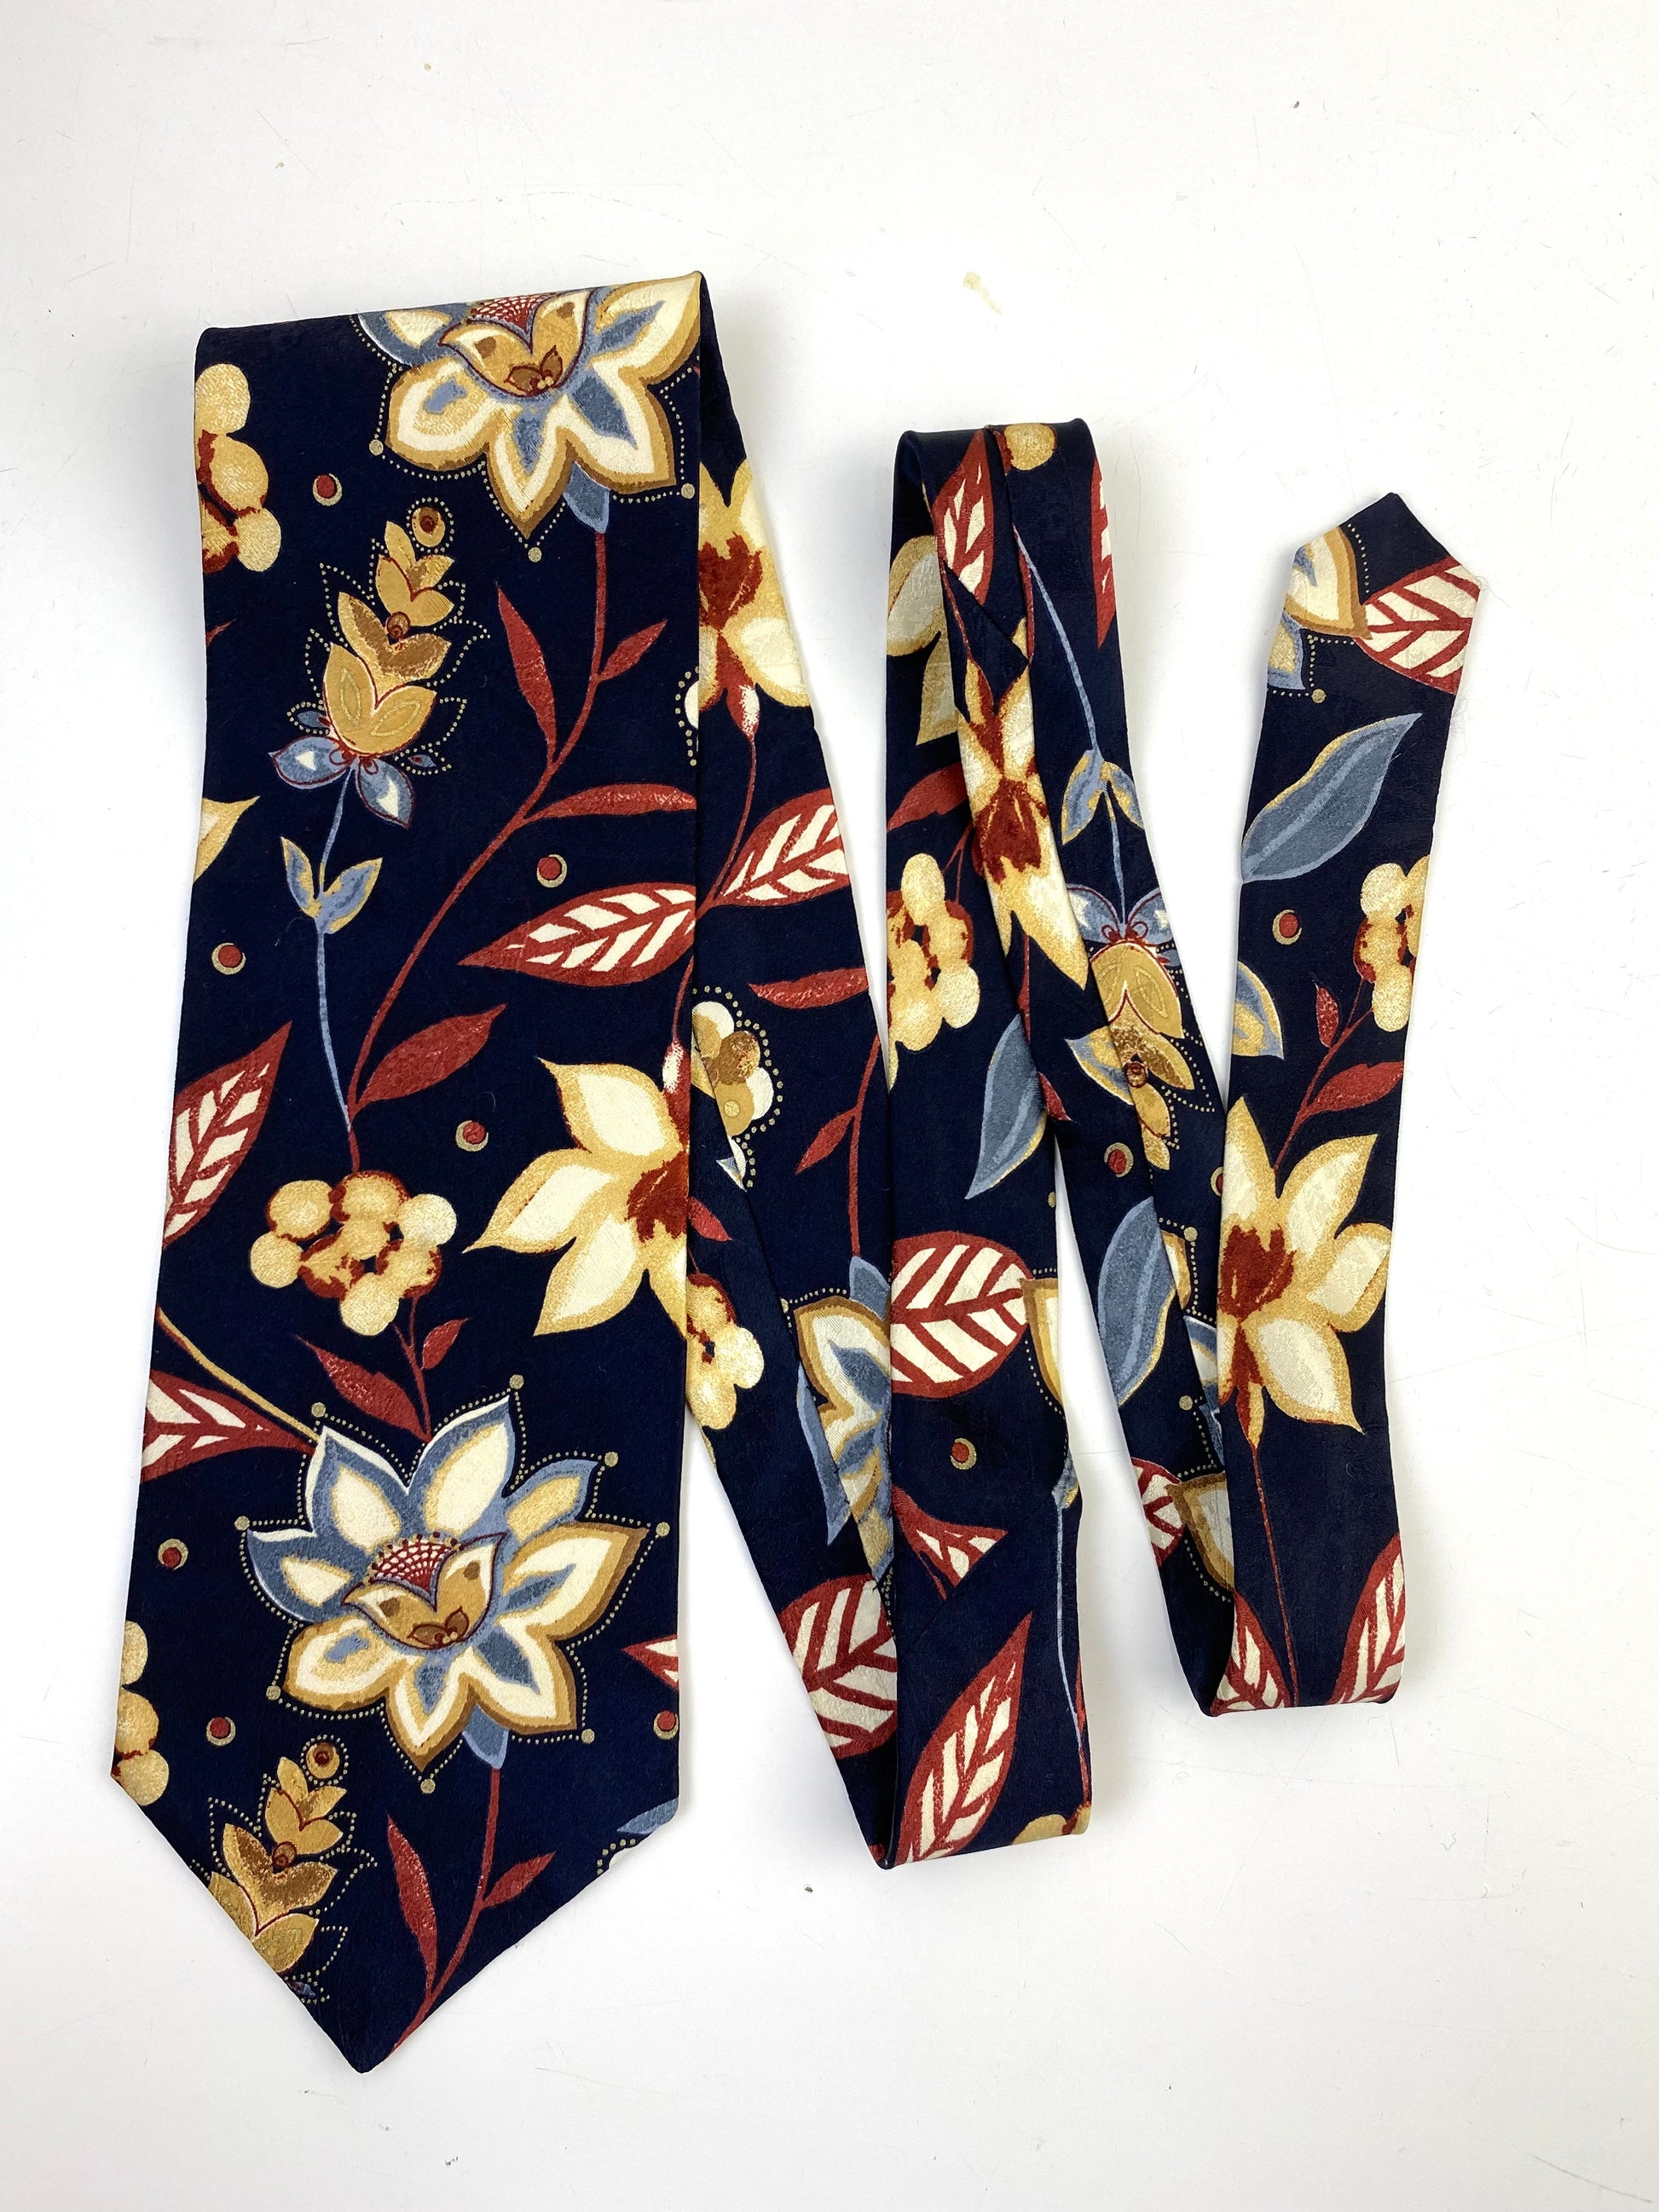 90s Deadstock Silk Necktie, Men's Vintage Navy/ Gold Floral Pattern Tie, NOS